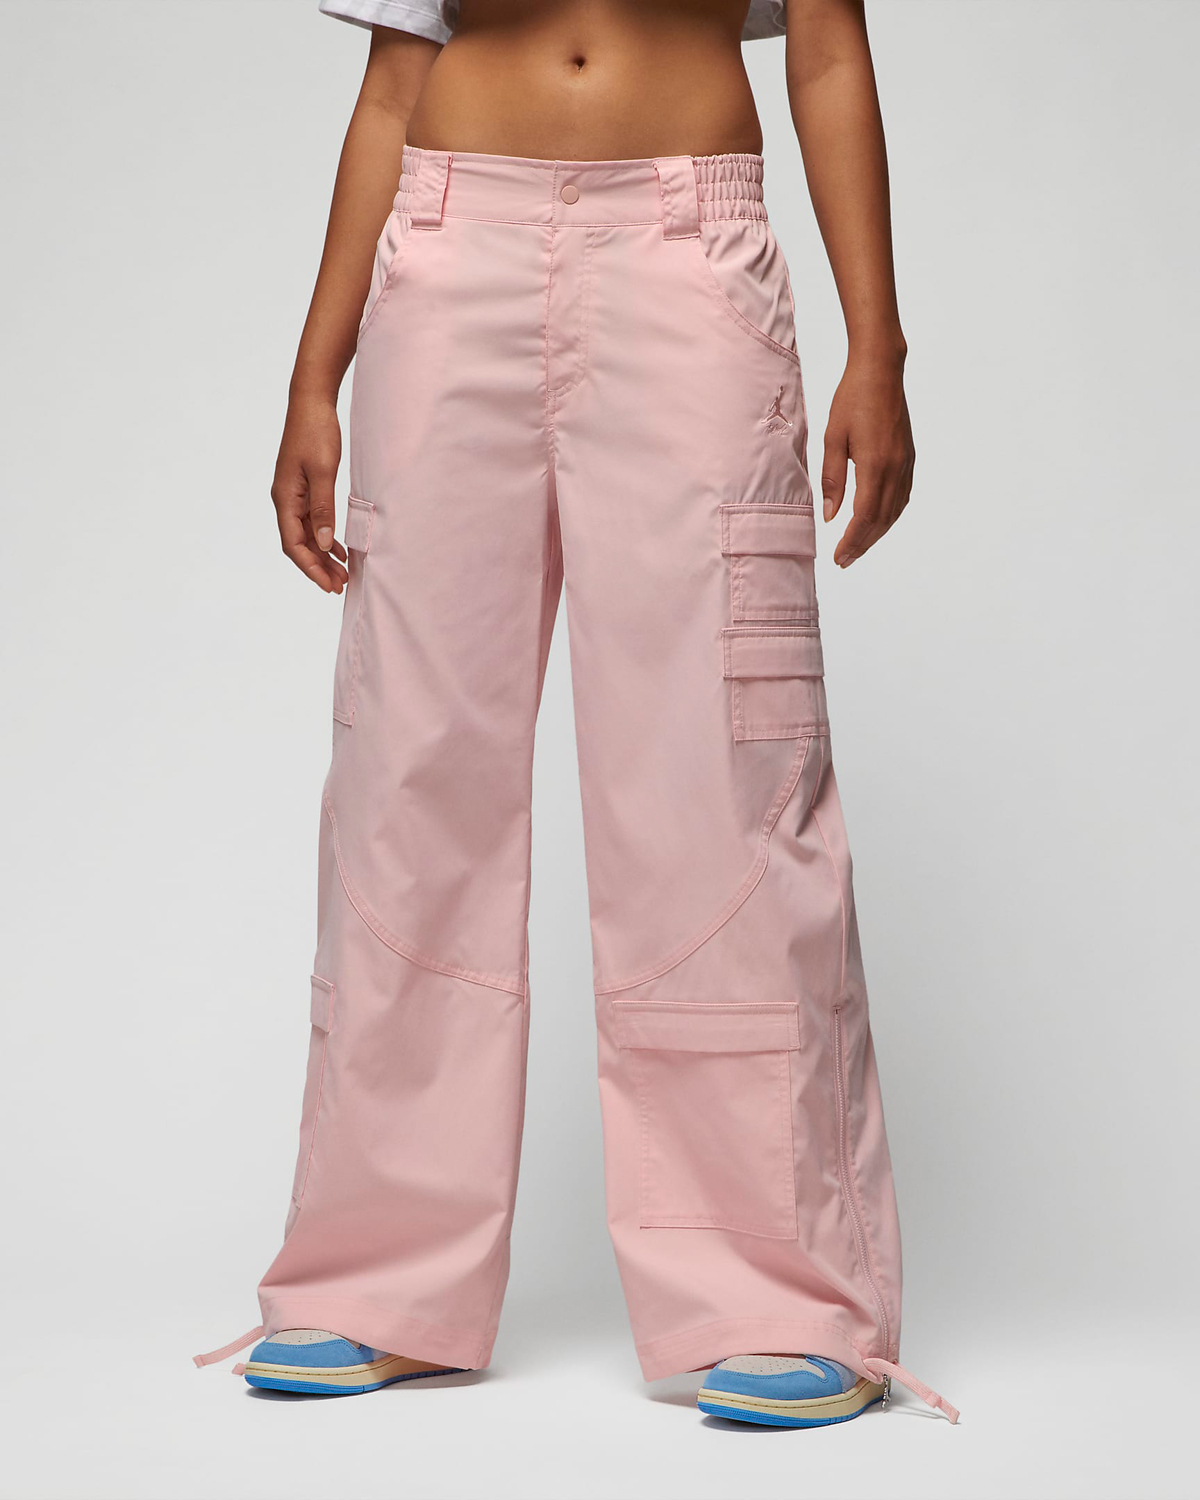 Jordan-Womens-Chicago-Pants-Atmosphere-Pink-1